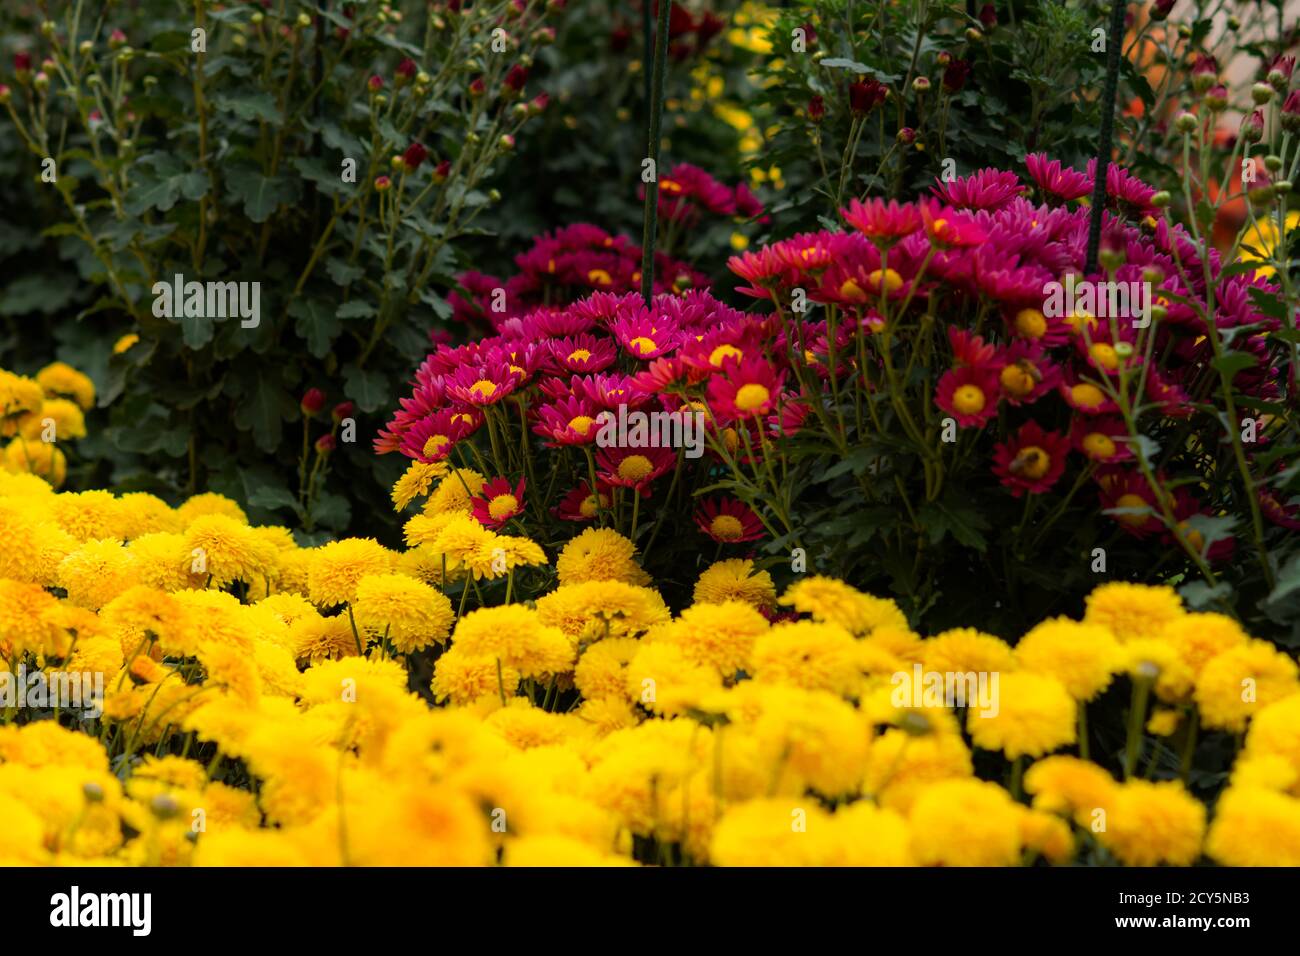 Blumenbeet von bunten Chrysanthemen auf einem verschwommenen Hintergrund des Gartens. Bunte Blumen Herbst Hintergrund. Verschiedene Sorten von Chrysanthemen, m Stockfoto